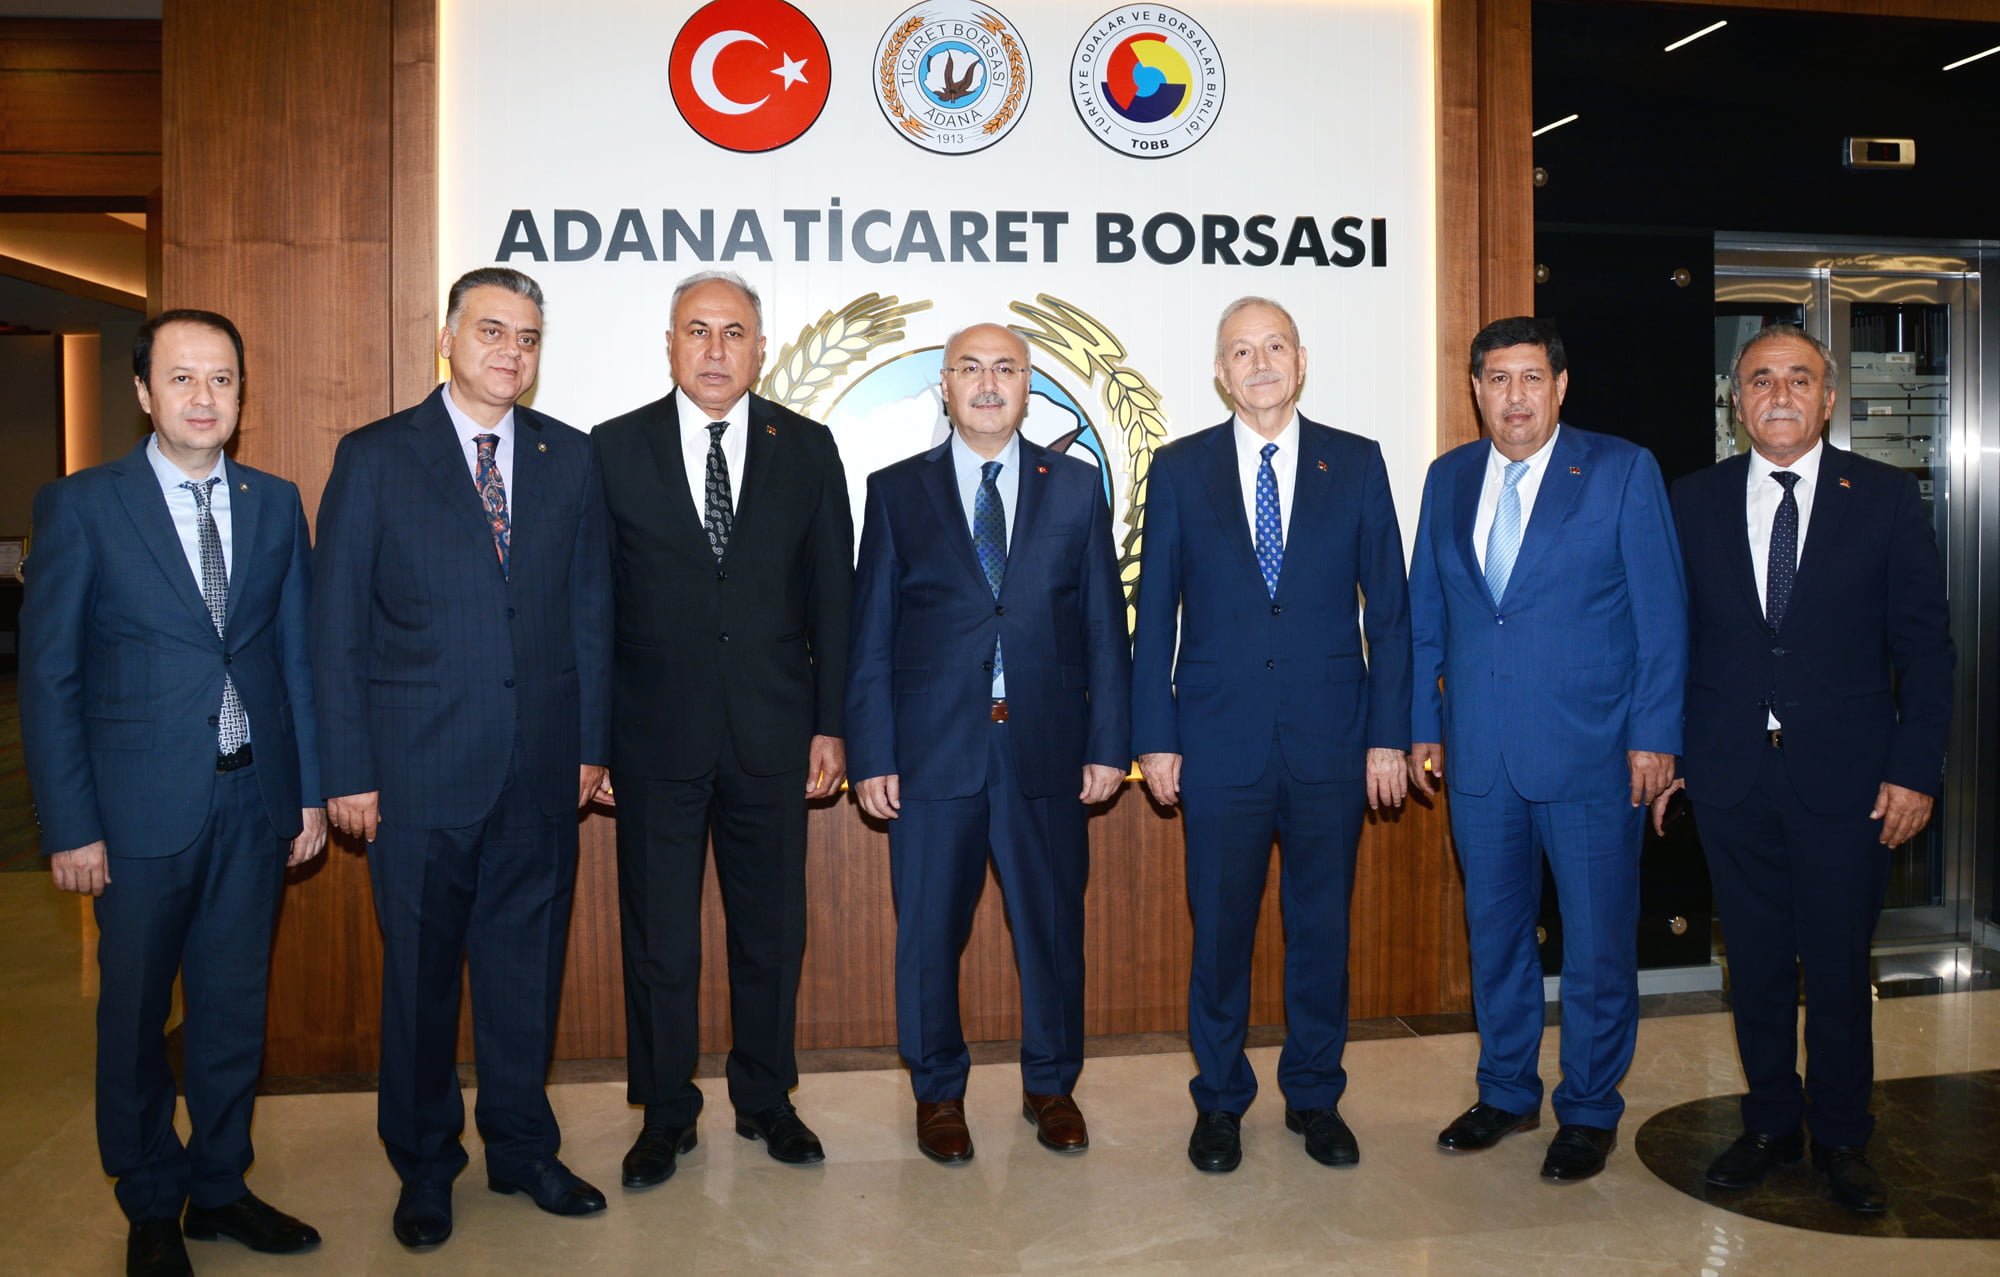 Adana Valisi Yavuz Selim Köşger’den, Adana Ticaret Borsasına ziyaret